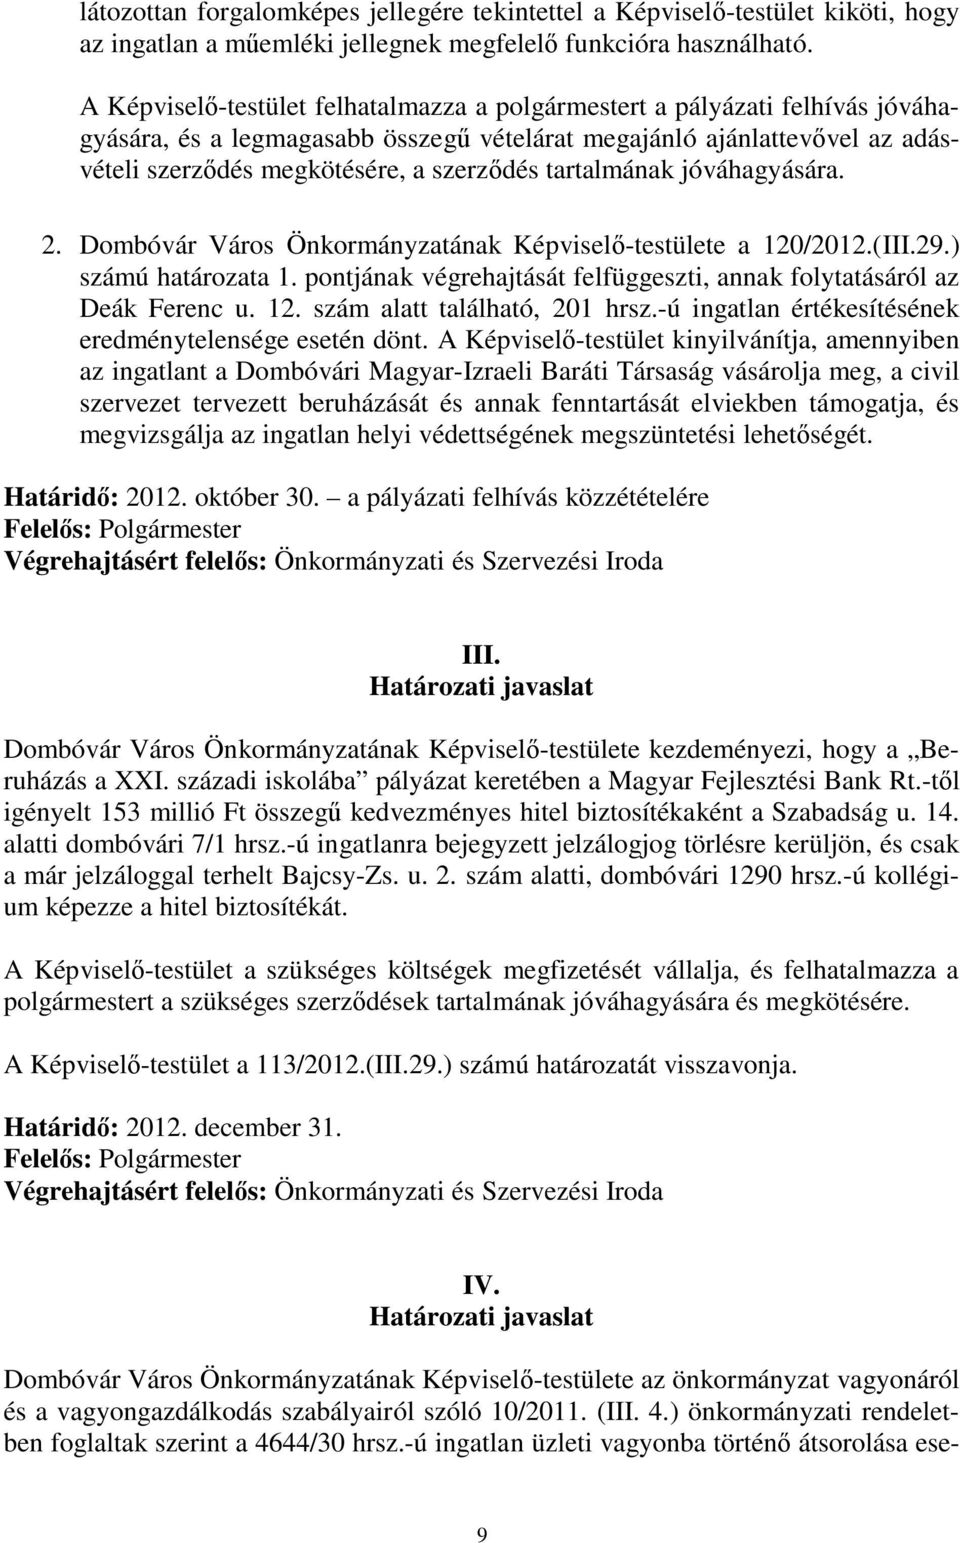 tartalmának jóváhagyására. 2. Dombóvár Város Önkormányzatának Képviselő-testülete a 120/2012.(III.29.) számú határozata 1. pontjának végrehajtását felfüggeszti, annak folytatásáról az Deák Ferenc u.